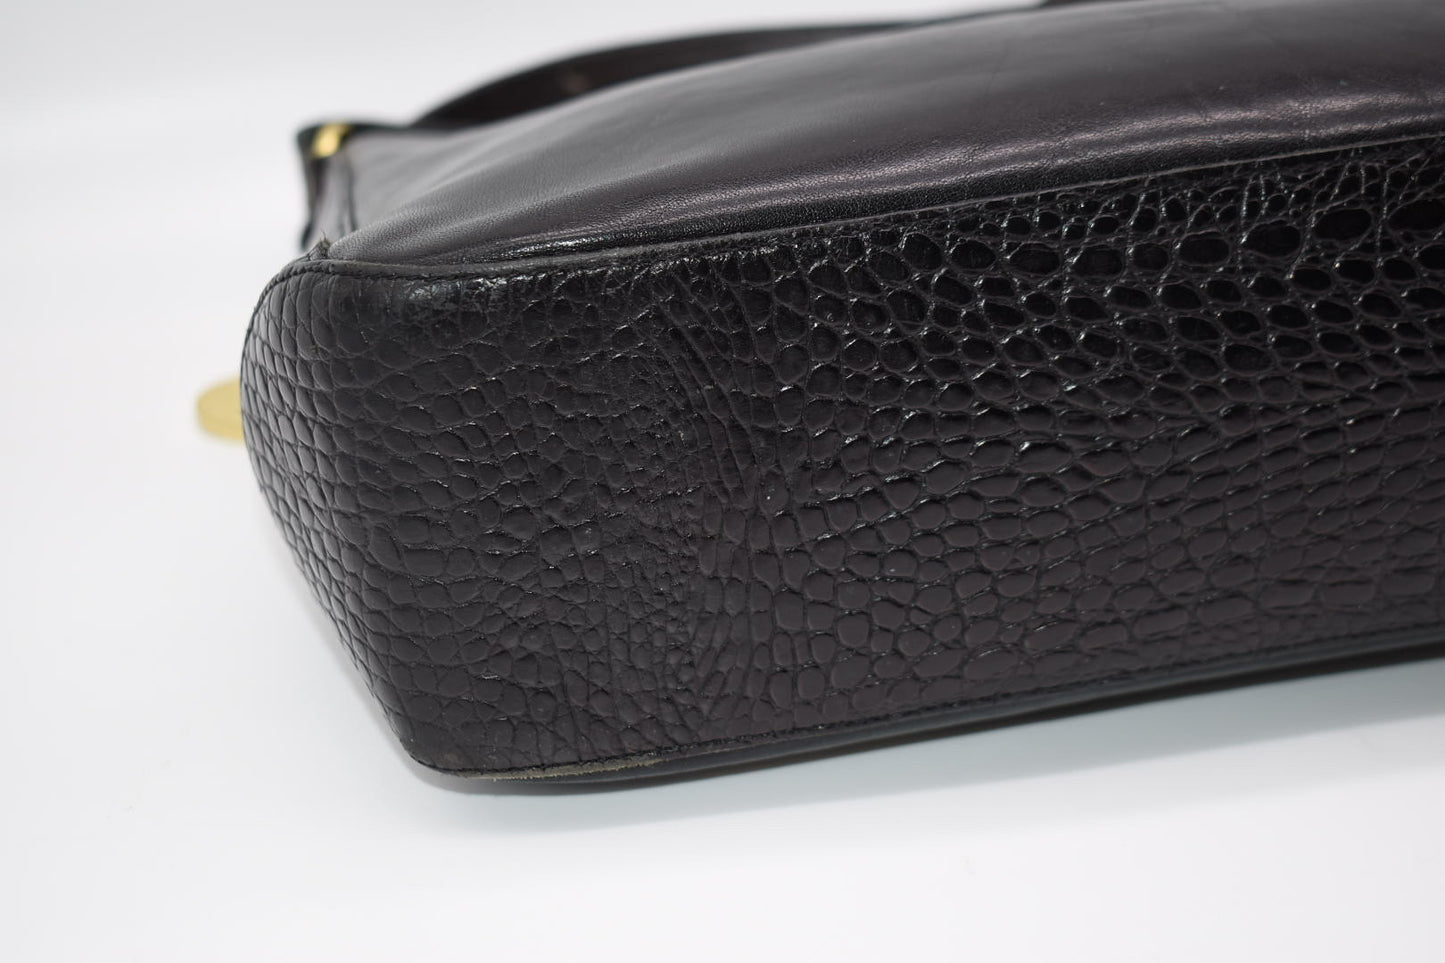 Vintage Brahmin Black Leather Shoulder Bag with Croc Embossed Trim